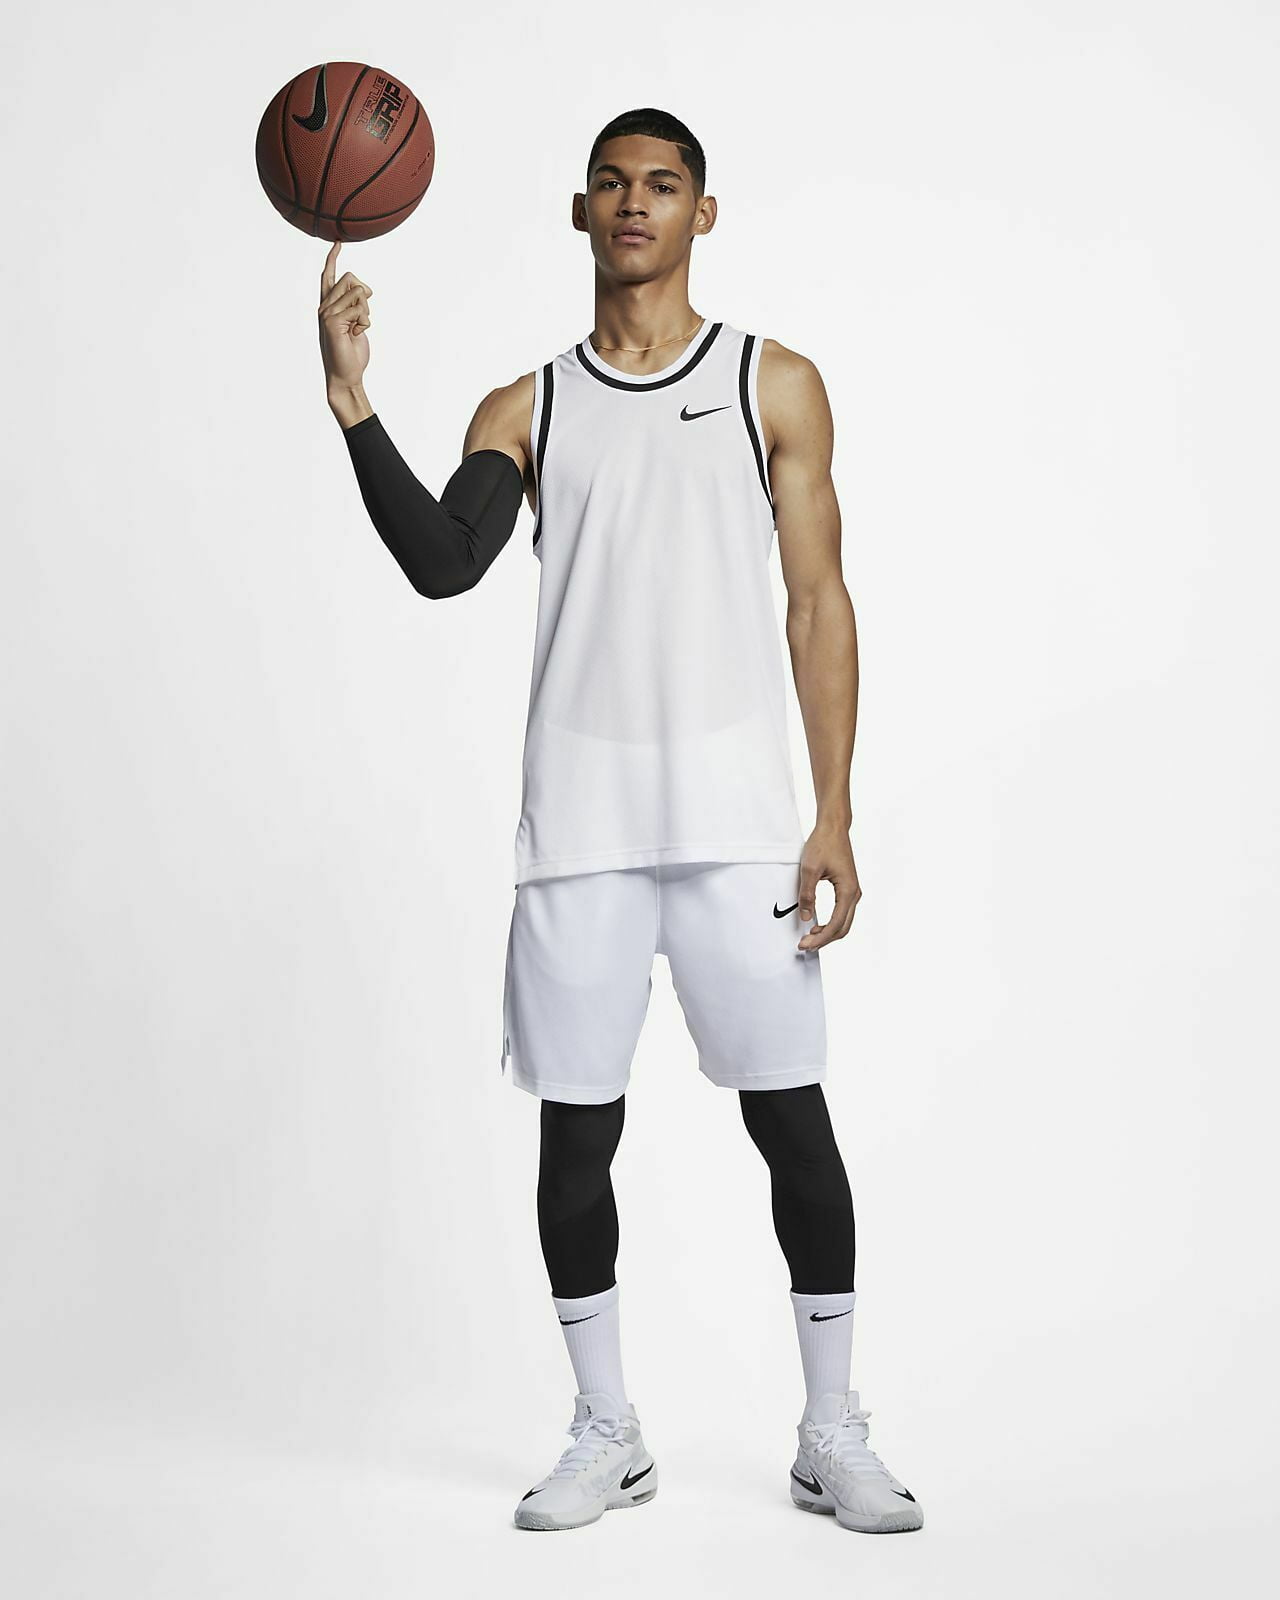 Nike Basketball Dri-Fit Classic Jersey - University Red/Black – SwiSh  basketball